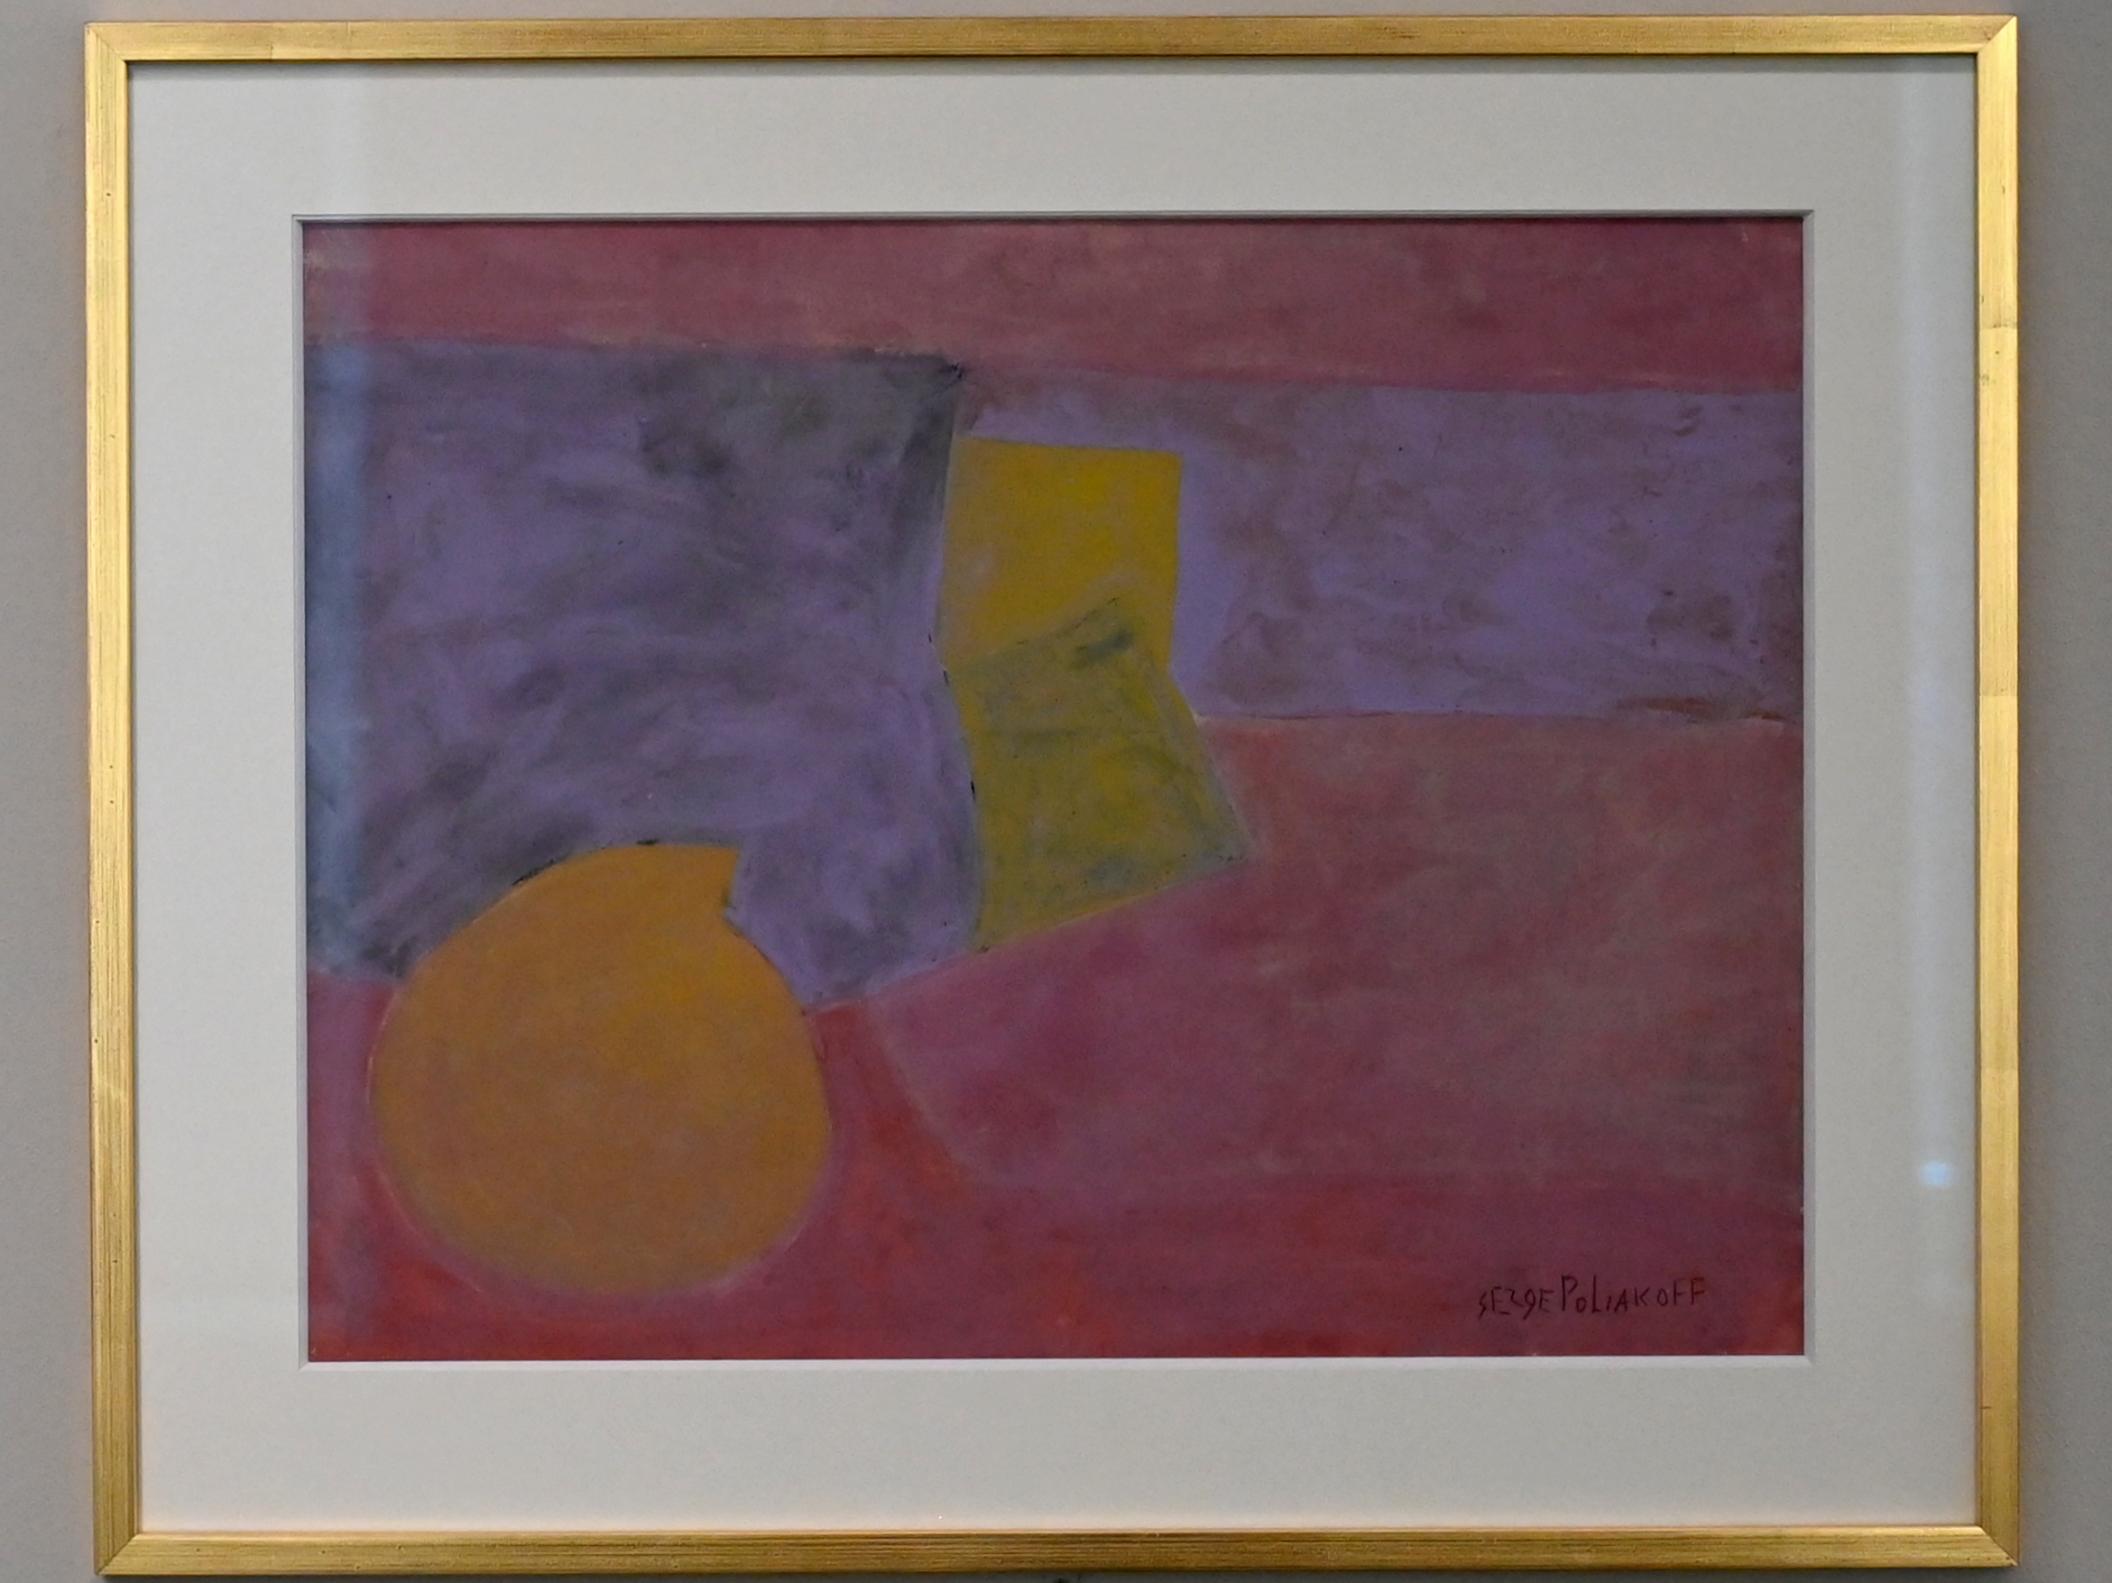 Serge Poliakoff (1936–1968), Abstrakte Komposition, Chemnitz, Museum Gunzenhauser, Saal 2.5 - Serge Poliakoff, um 1954